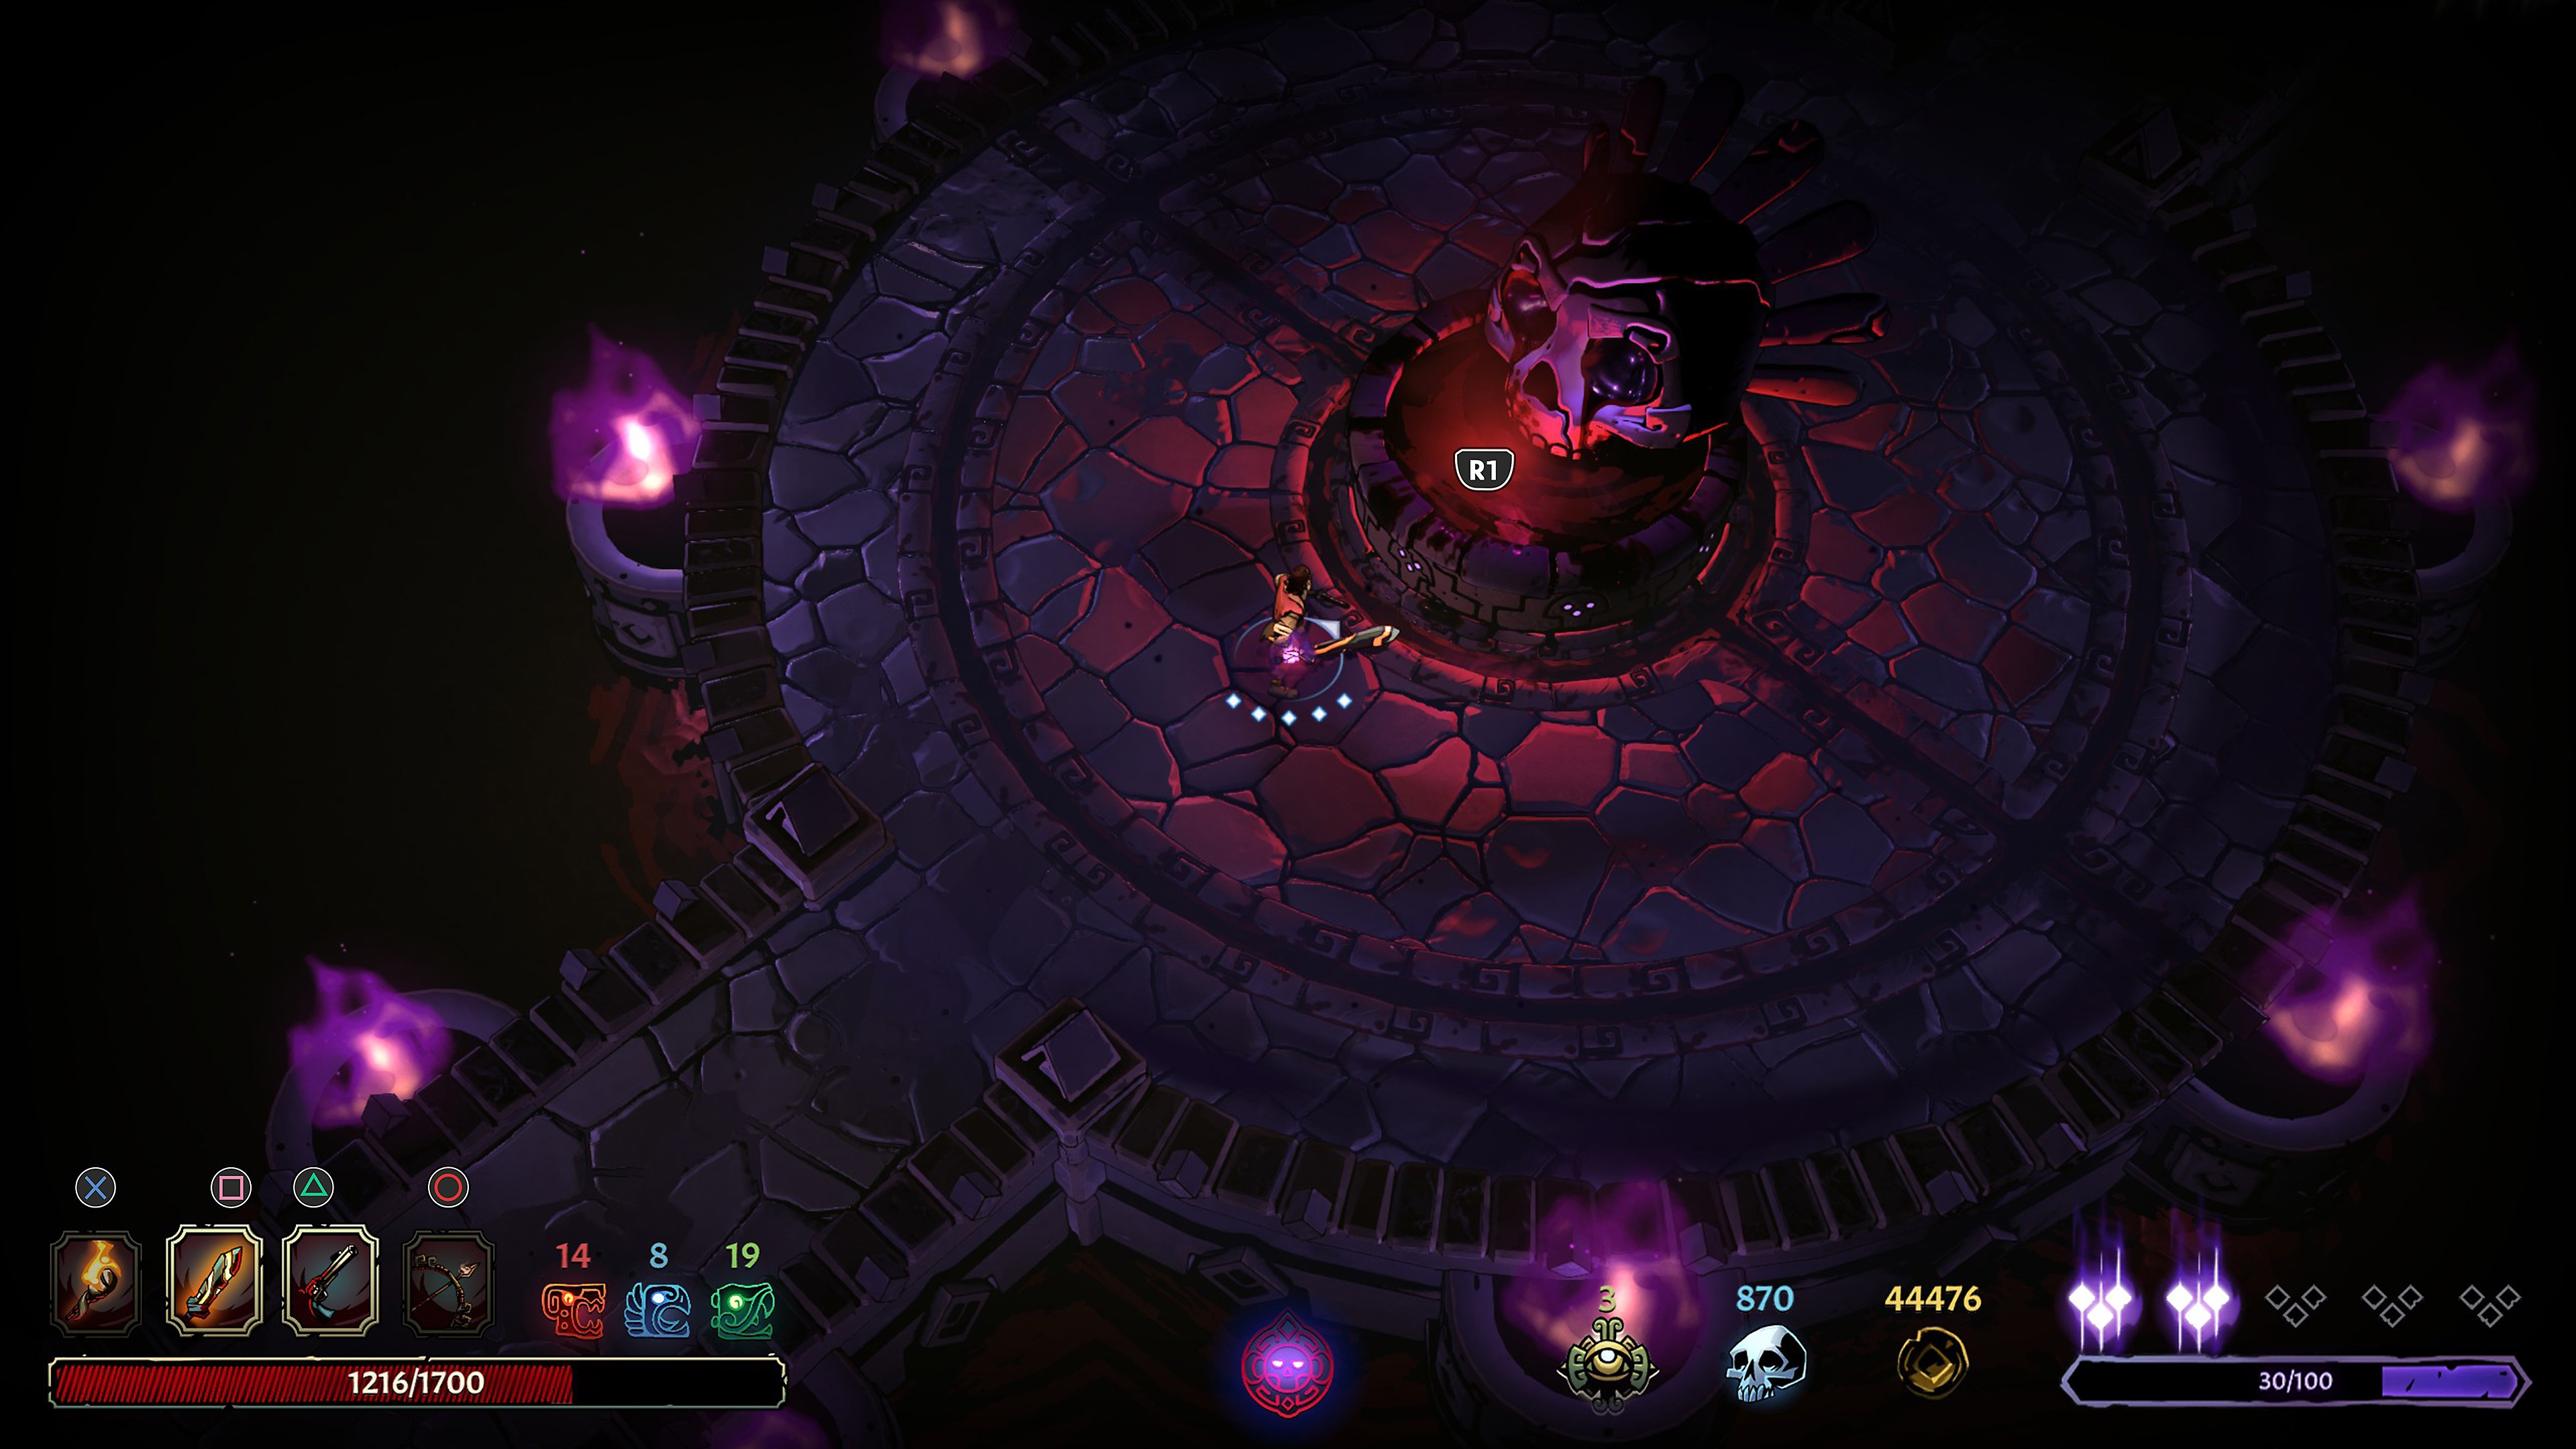 لقطة شاشة للعبة Curse of the Dead gods تُظهر طريقة اللعب الاستكشافية